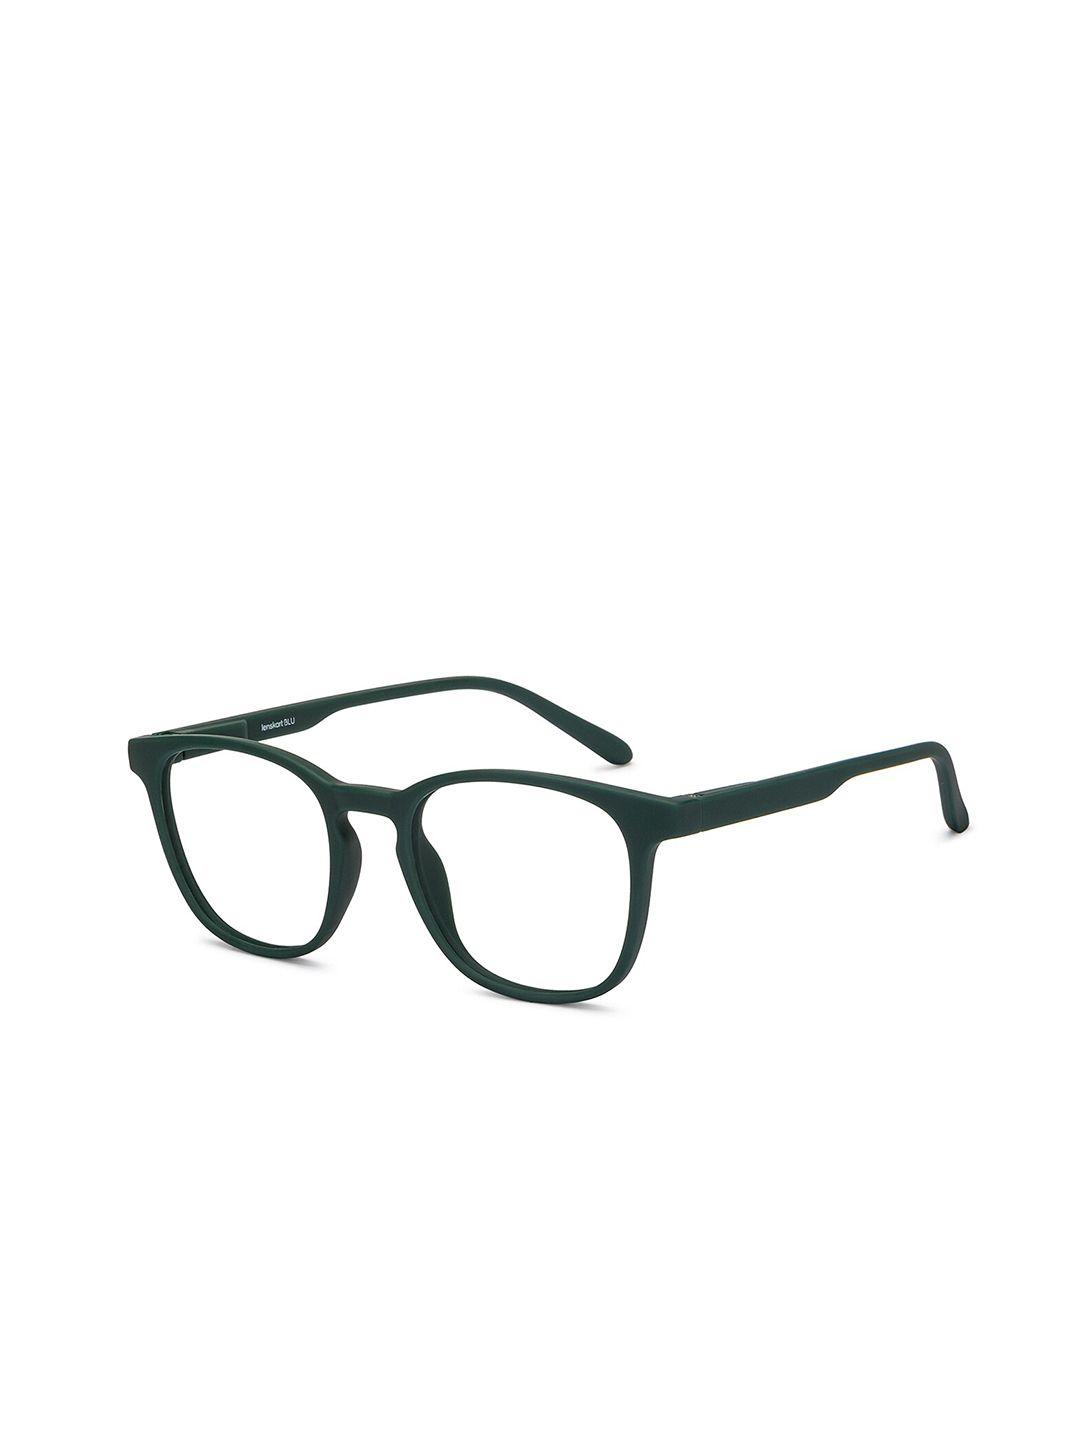 lenskart blu unisex hustlr eye protection full rim glasses square frames 206971